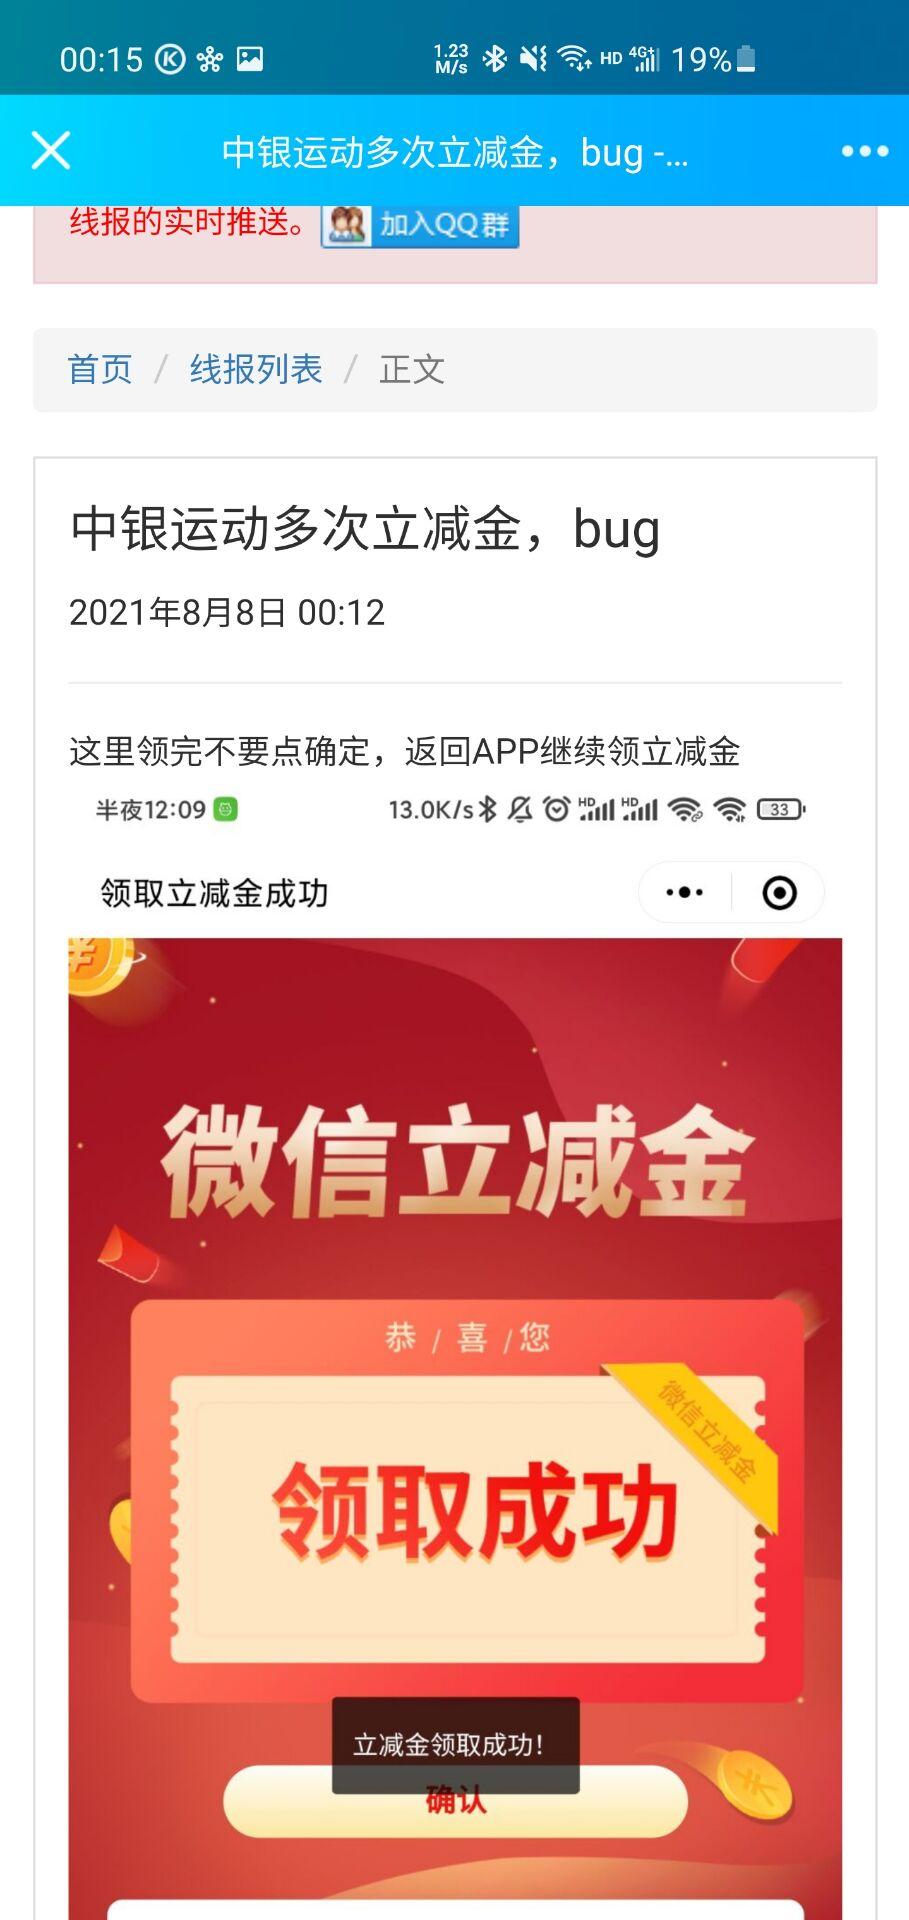 中行8.8立减金-bug多次领取-惠小助(52huixz.com)